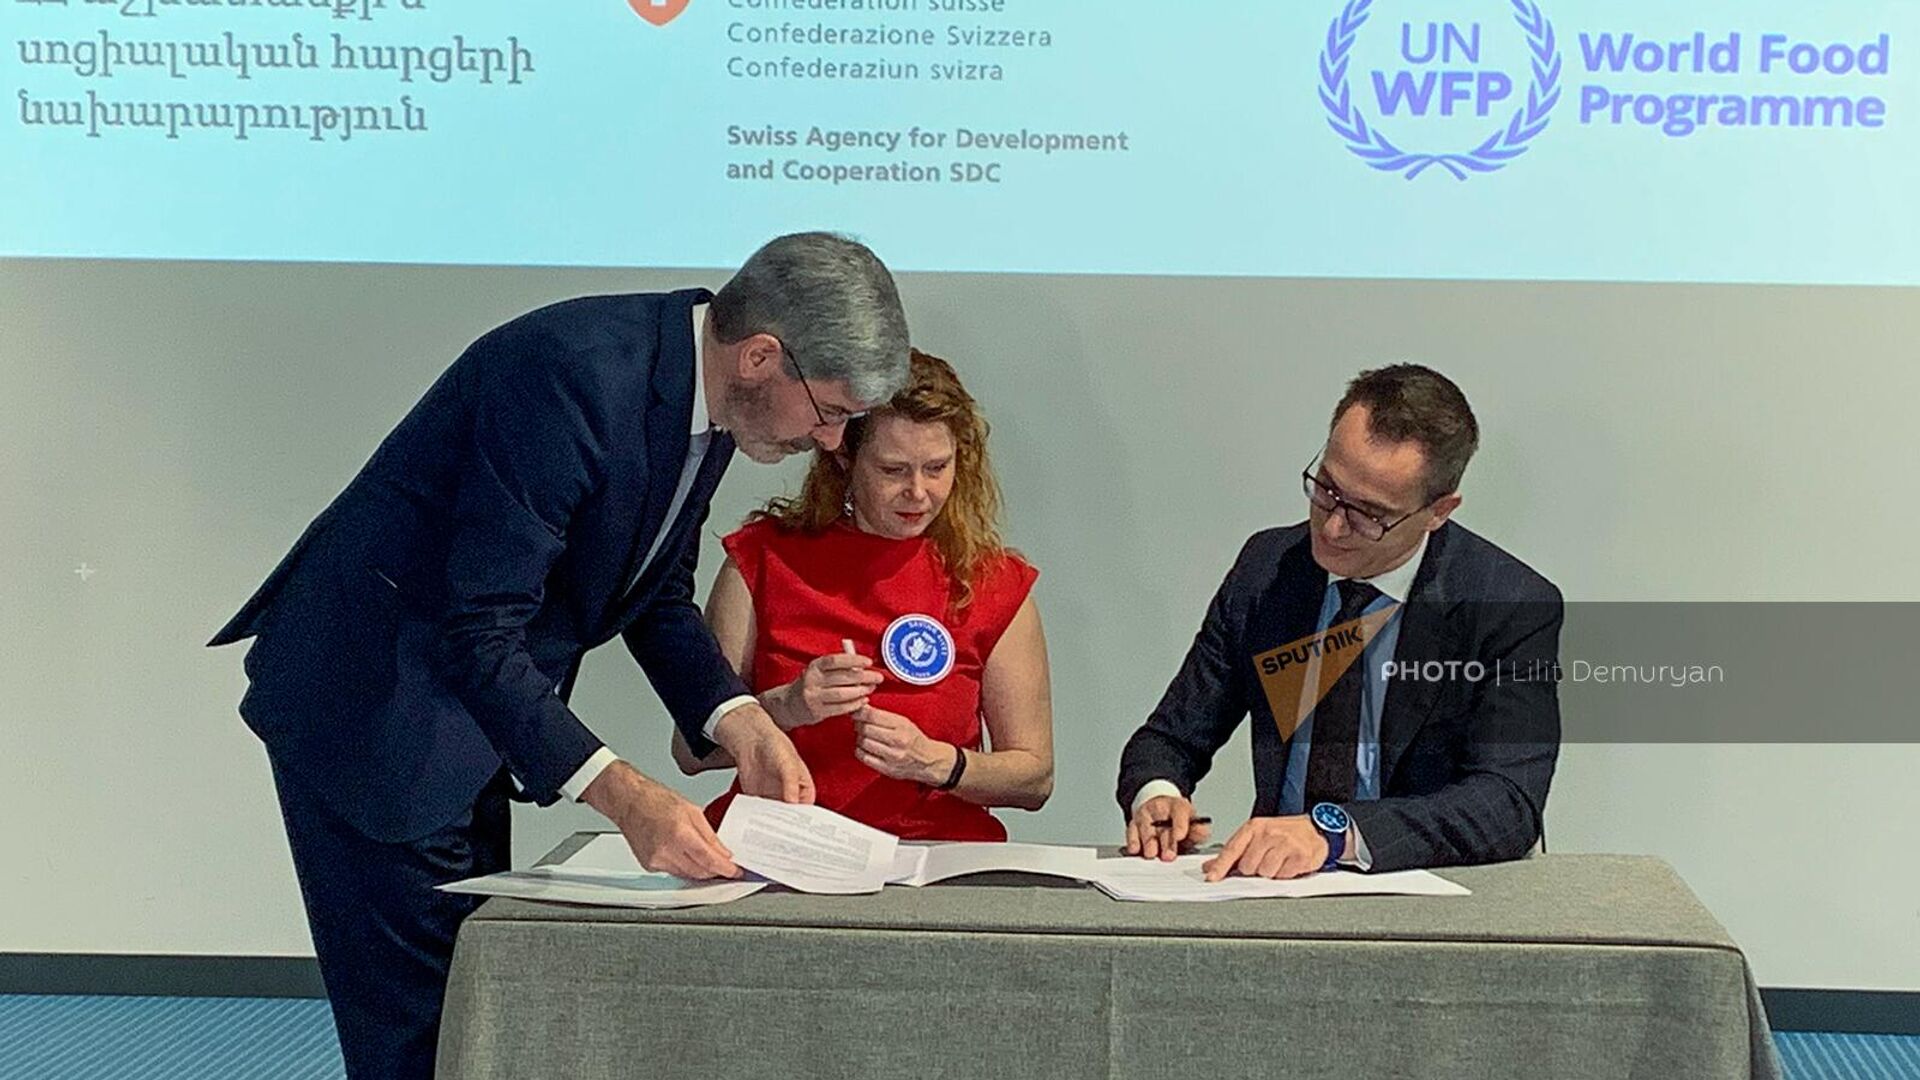 Շվեյցարիայի զարգացման և համագործակցության գործակալությունը և ՄԱԿ–ի պարենի համաշխարհային ծրագիրը համատեղ պայմանագիր ստորագրեցին - Sputnik Արմենիա, 1920, 28.11.2022